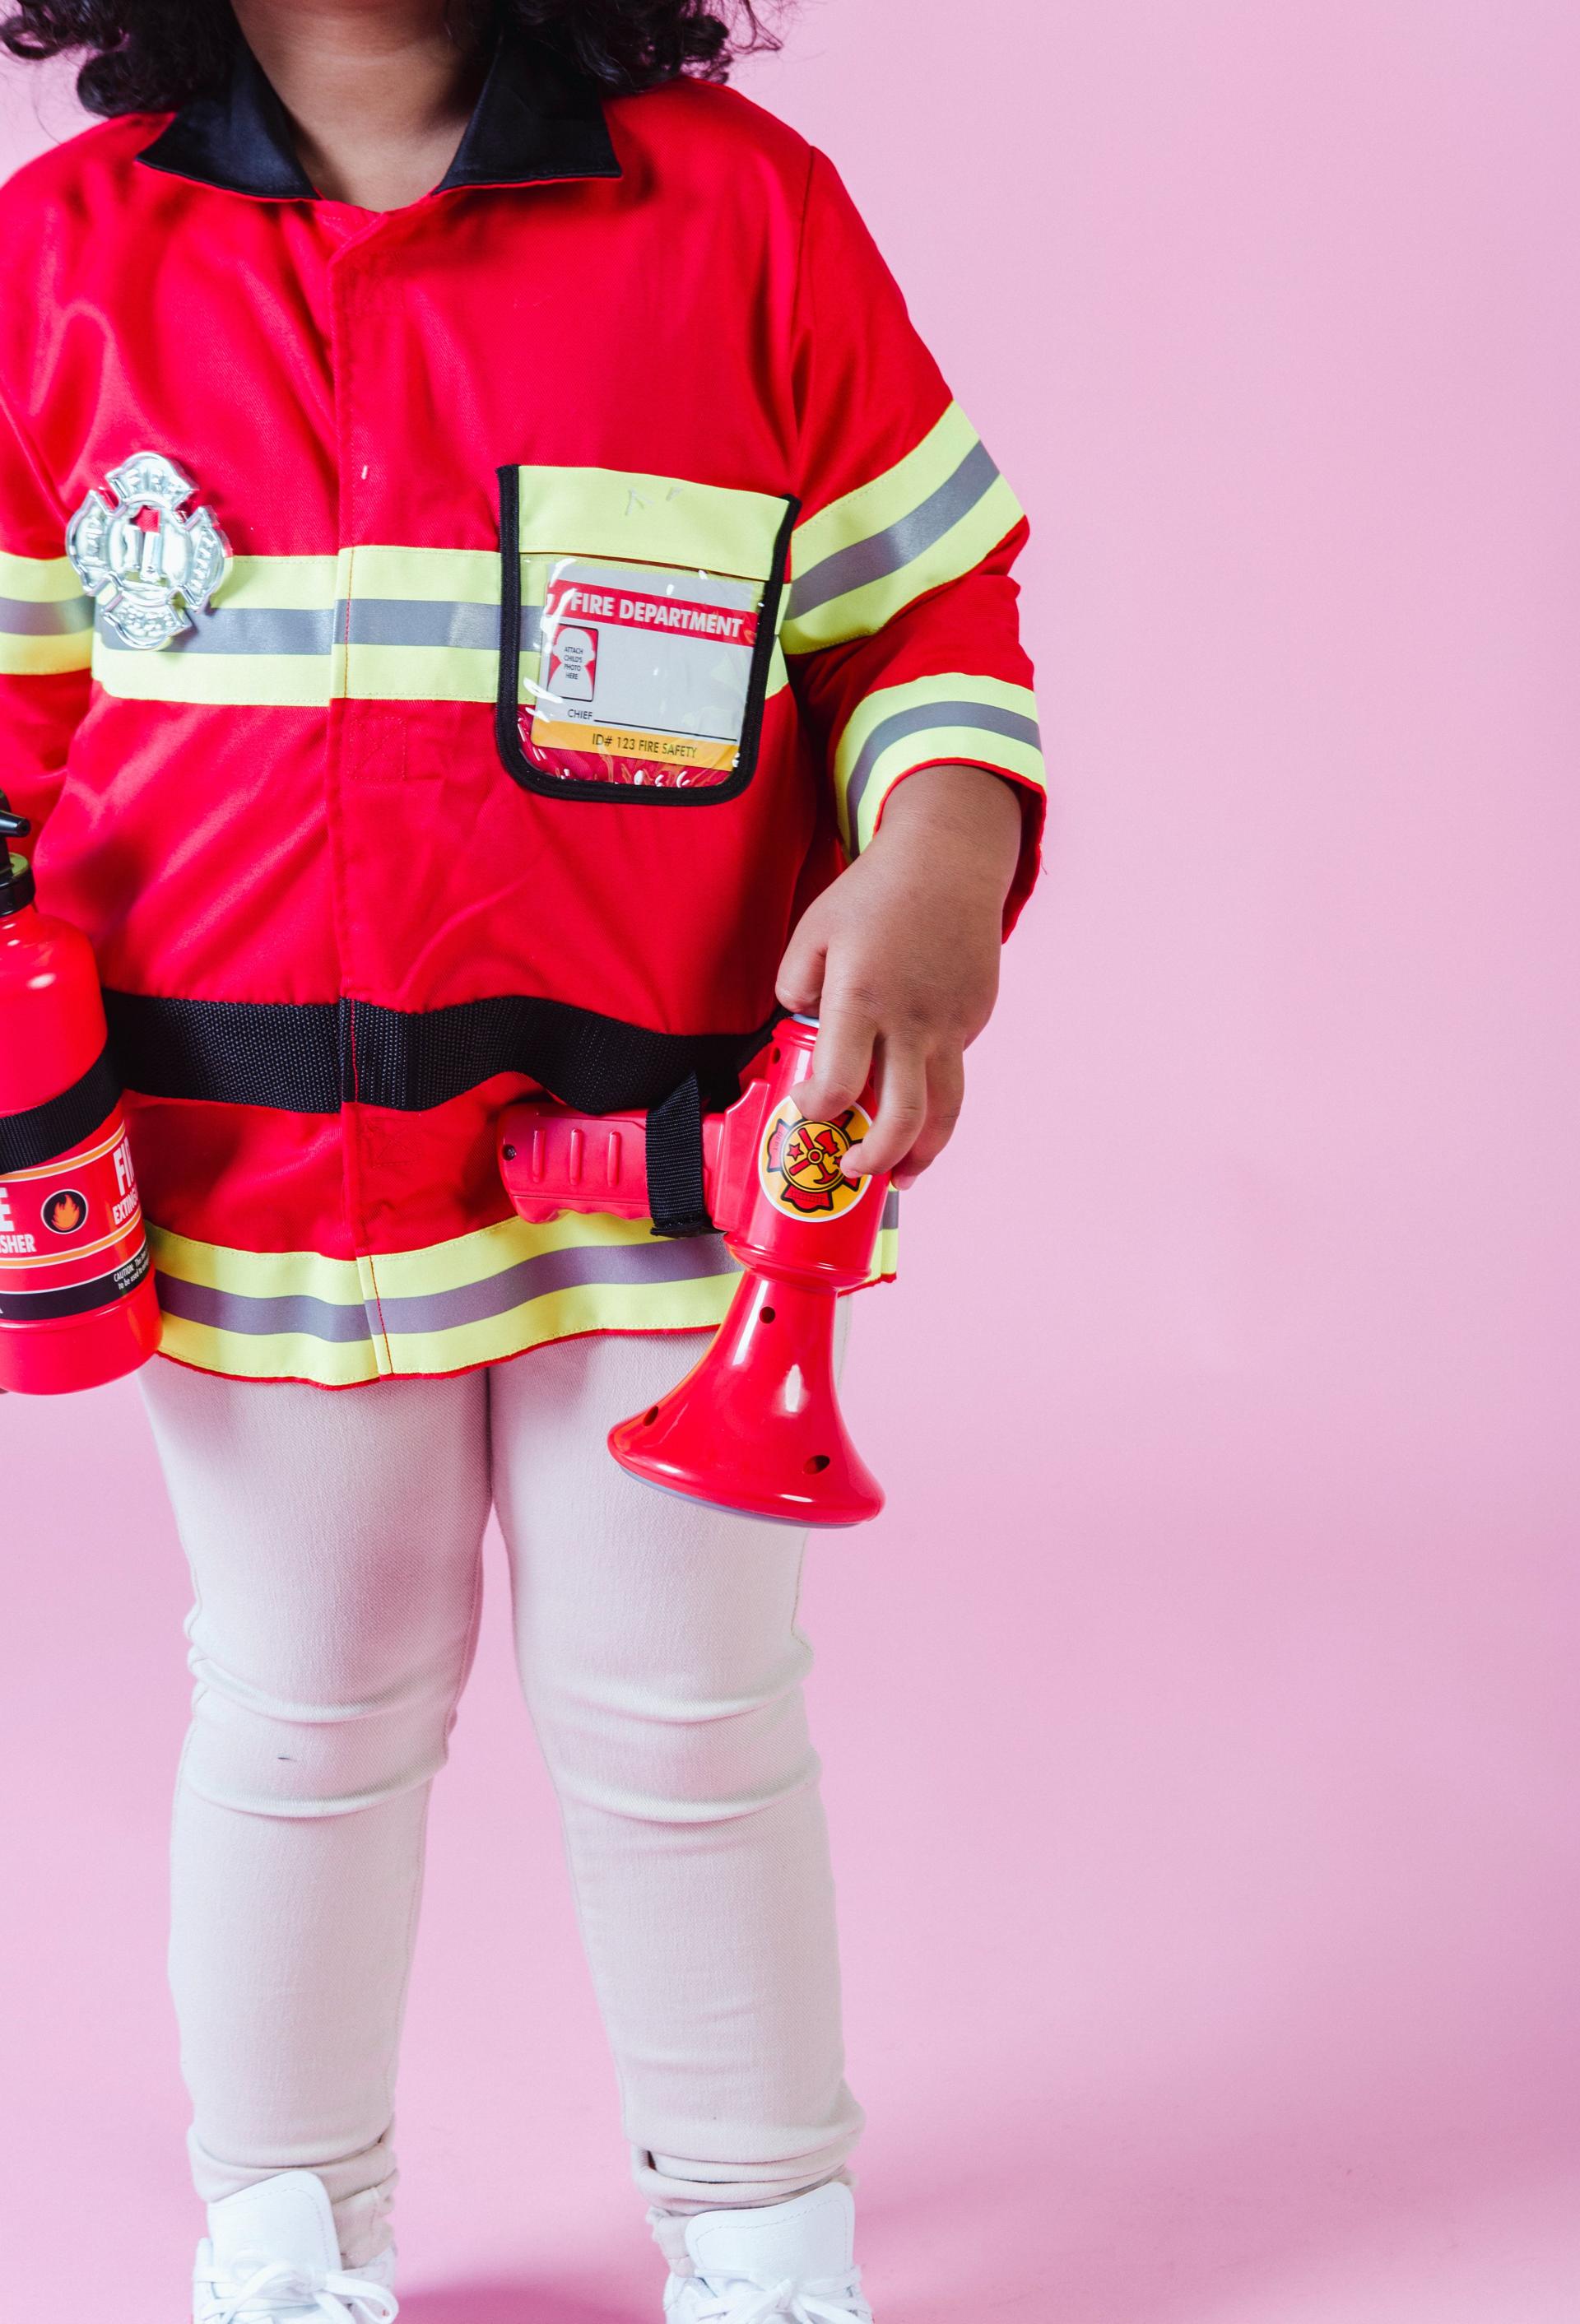 Wprowadzenie do zawodu strażaka i znaczenie bezpieczeństwa osobistego